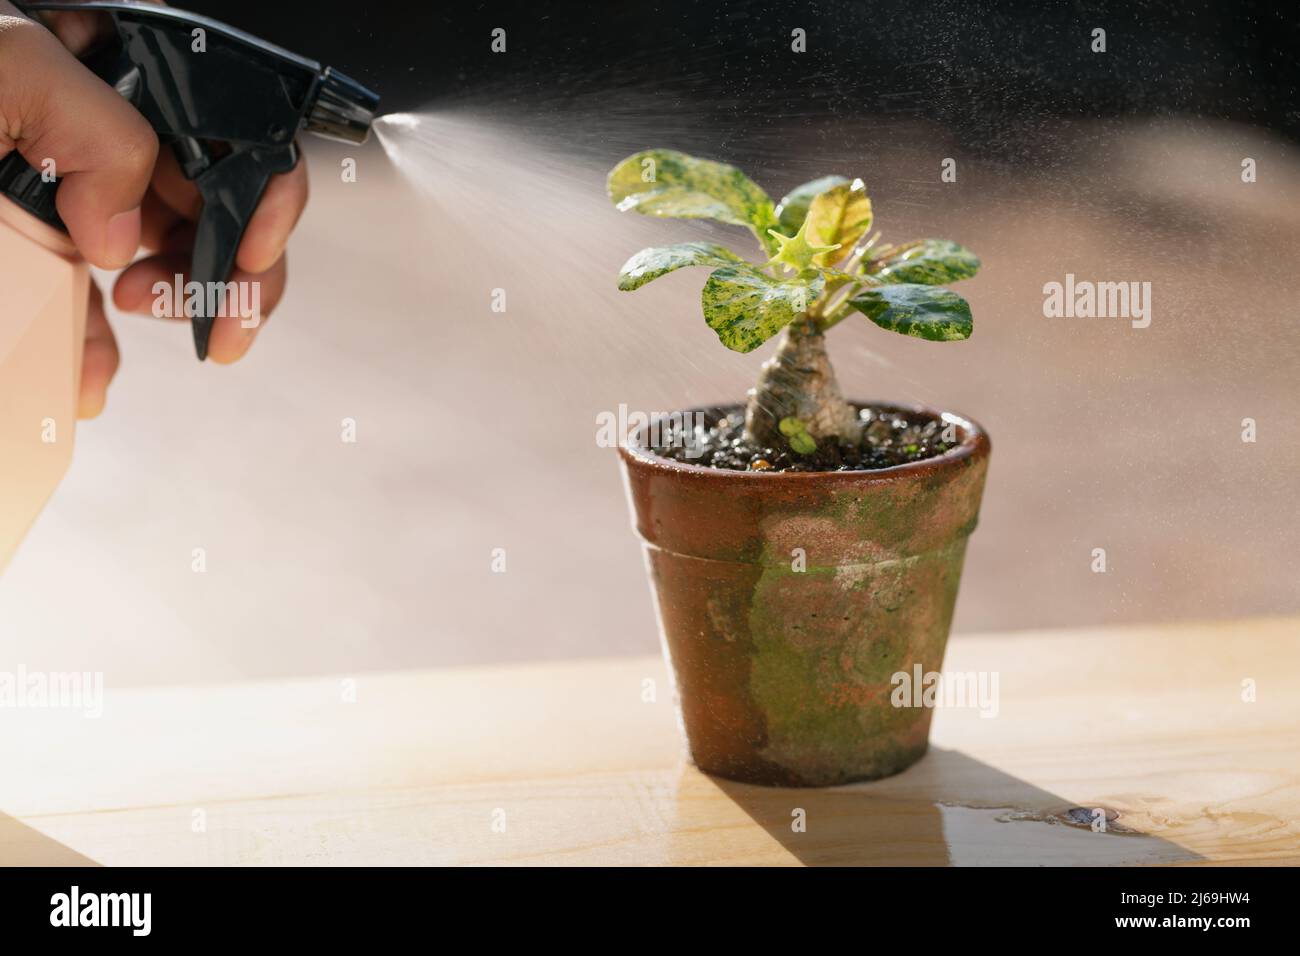 Pflege Von Zimmerpflanzen. Die Menschen sprühen Flüssigdünger für die Blattfütterung auf die dorstenia-Pflanze. Stockfoto